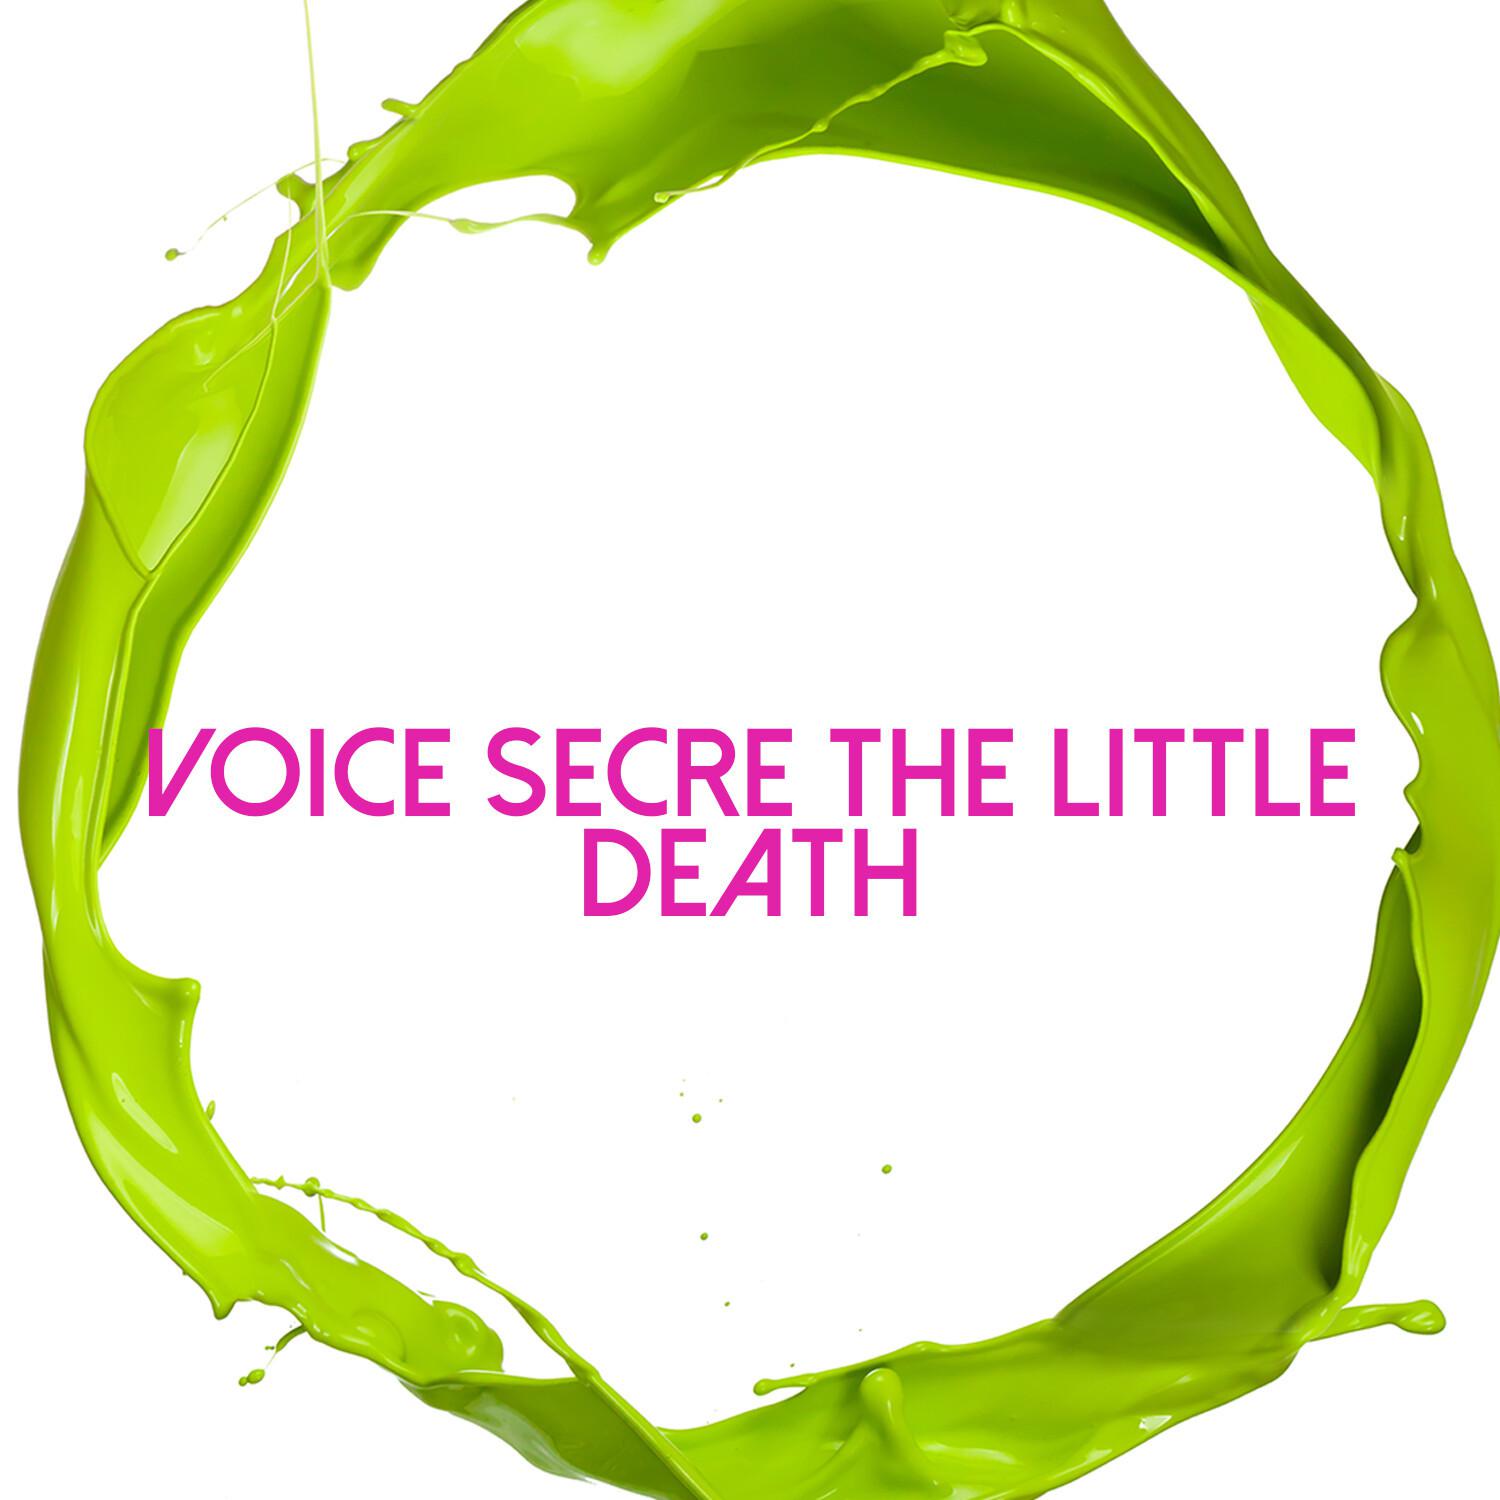 Voice Secre the Little Death